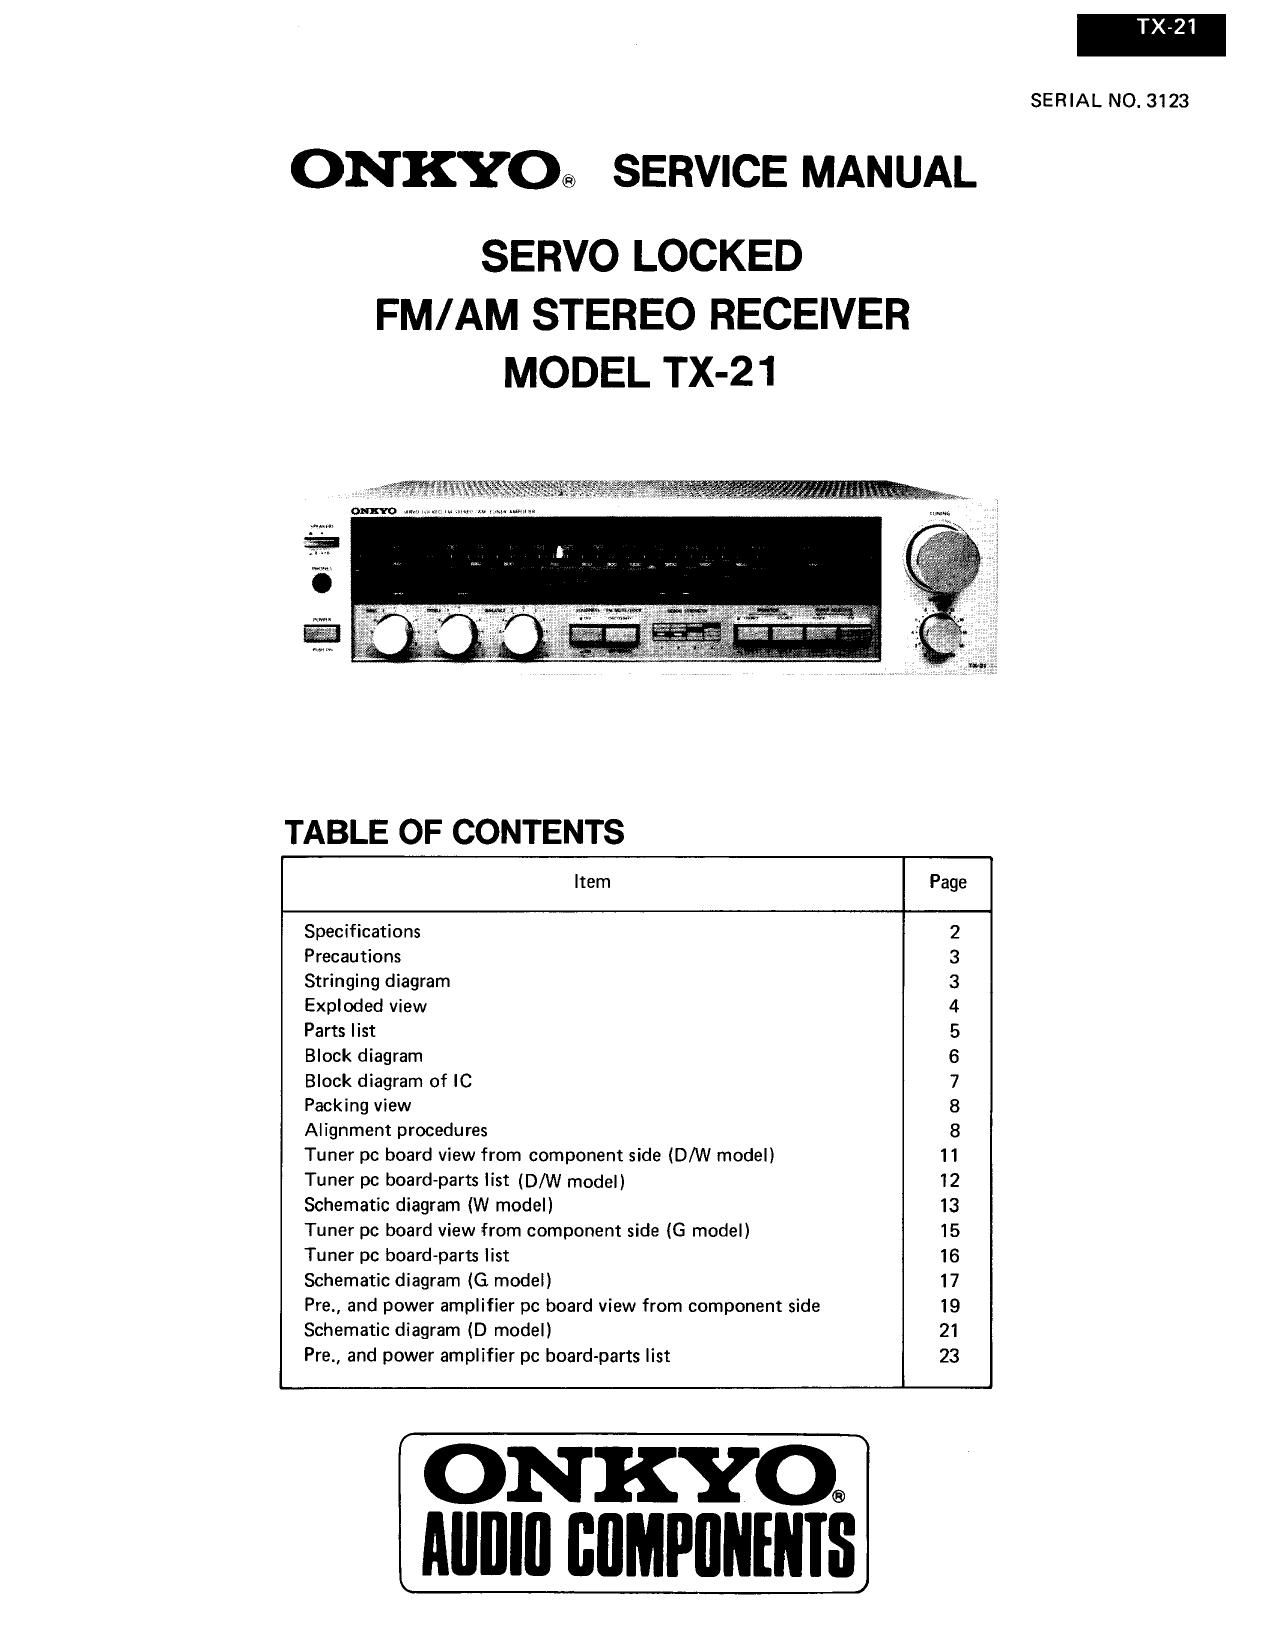 Onkyo TX 21 Service Manual